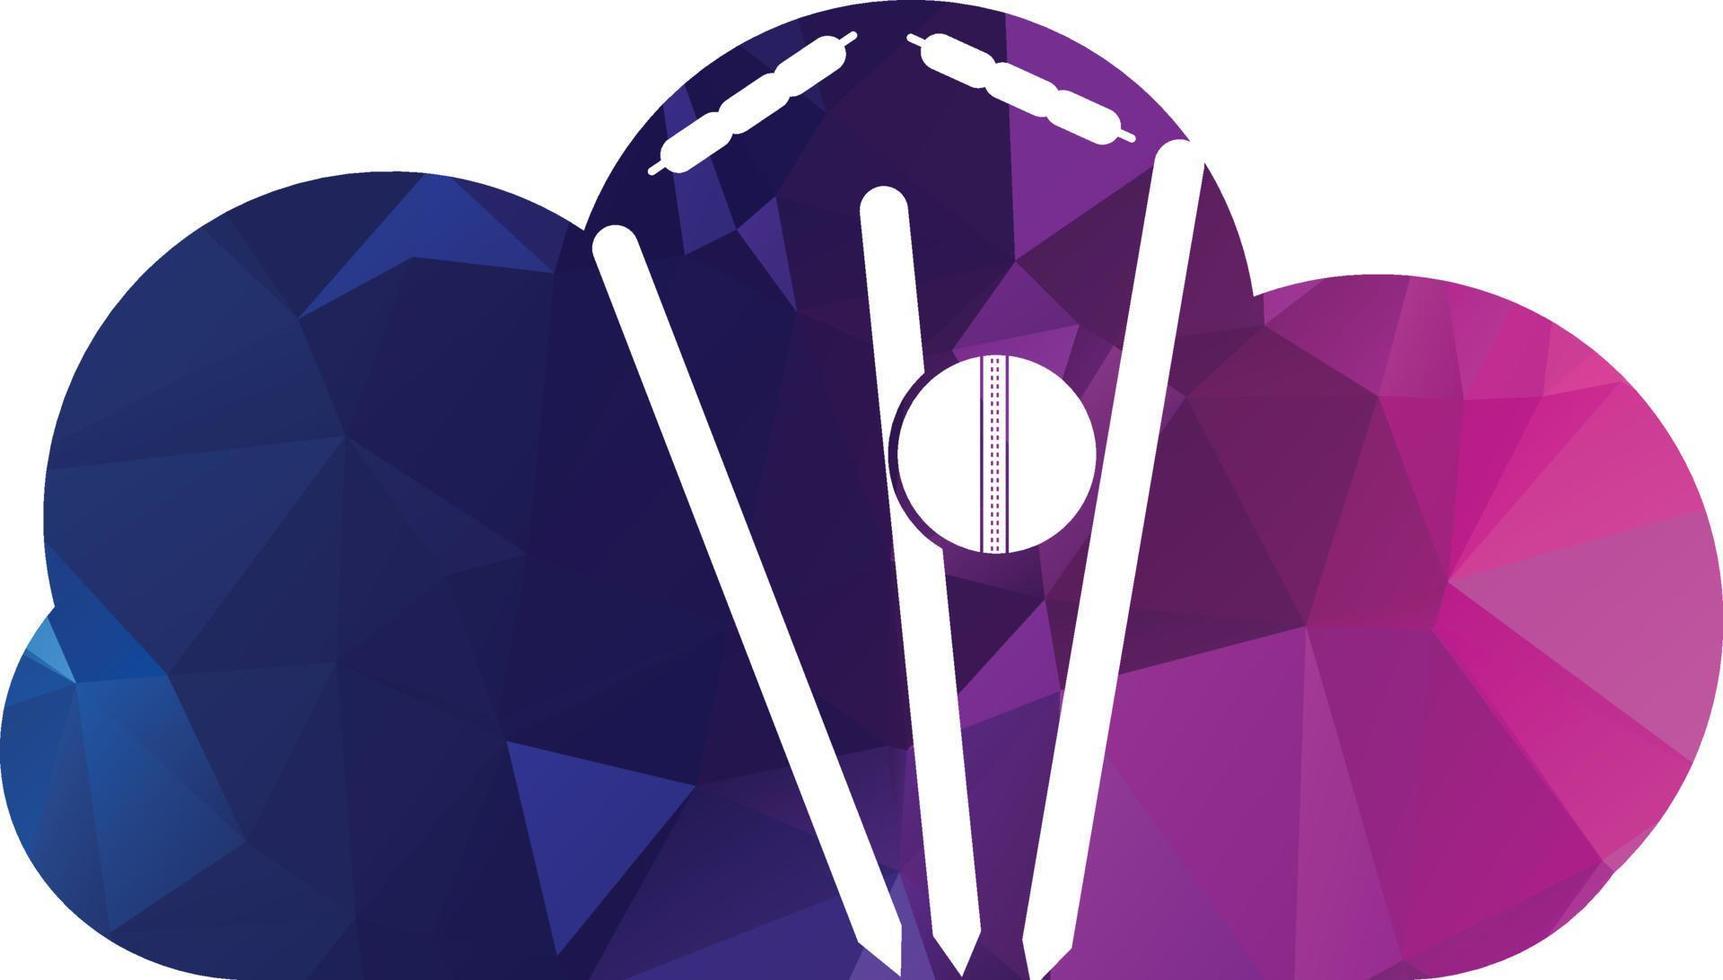 krekel wickets en bal logo. wicket en borgtocht logo. krekel kampioenschap logo. krekel logo vector